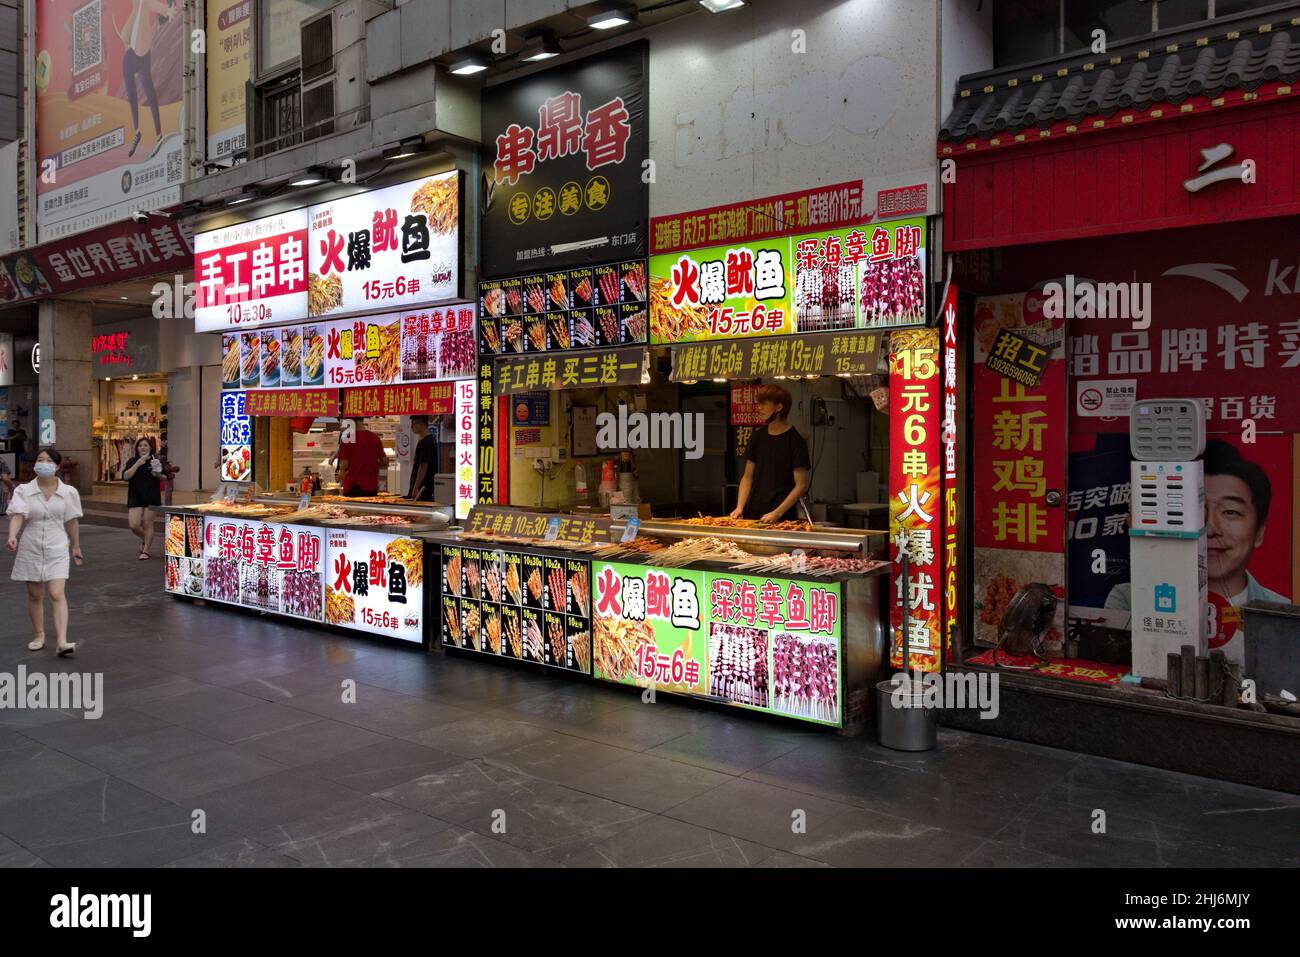 Puesto de comida, comida callejera en Shenzhen, China Foto de stock